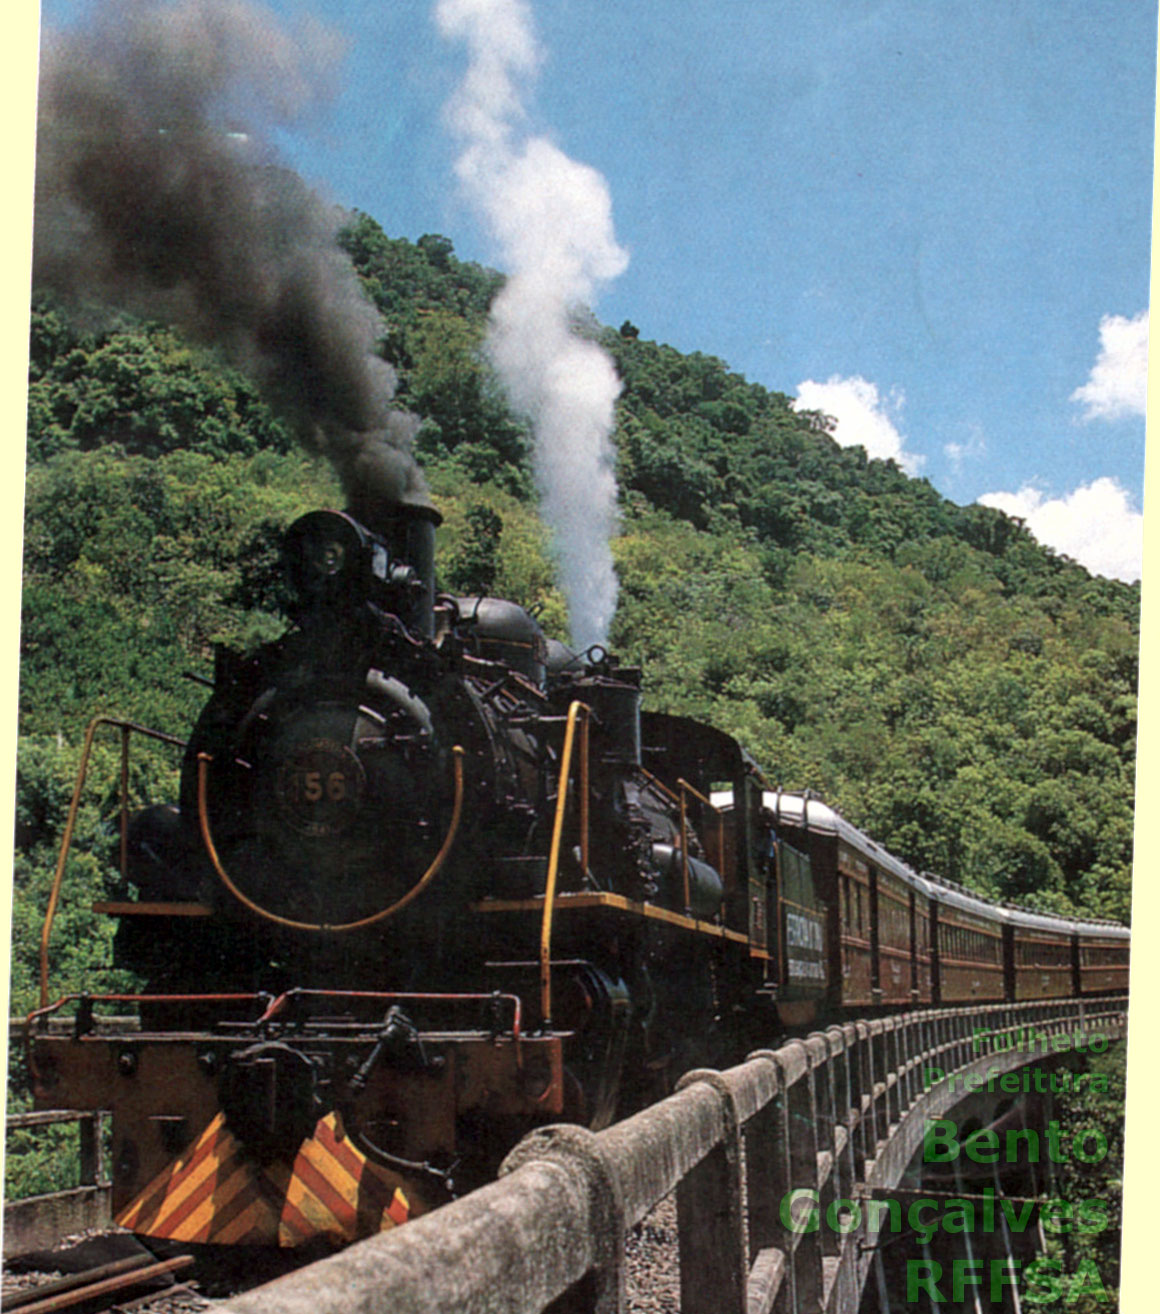 Foto de capa do antigo folheto da Ferrovia do Vinho, produzido pela Prefeitura Municipal de Bento Gonçalves e pela RFFSA - Rede Ferroviária Federal